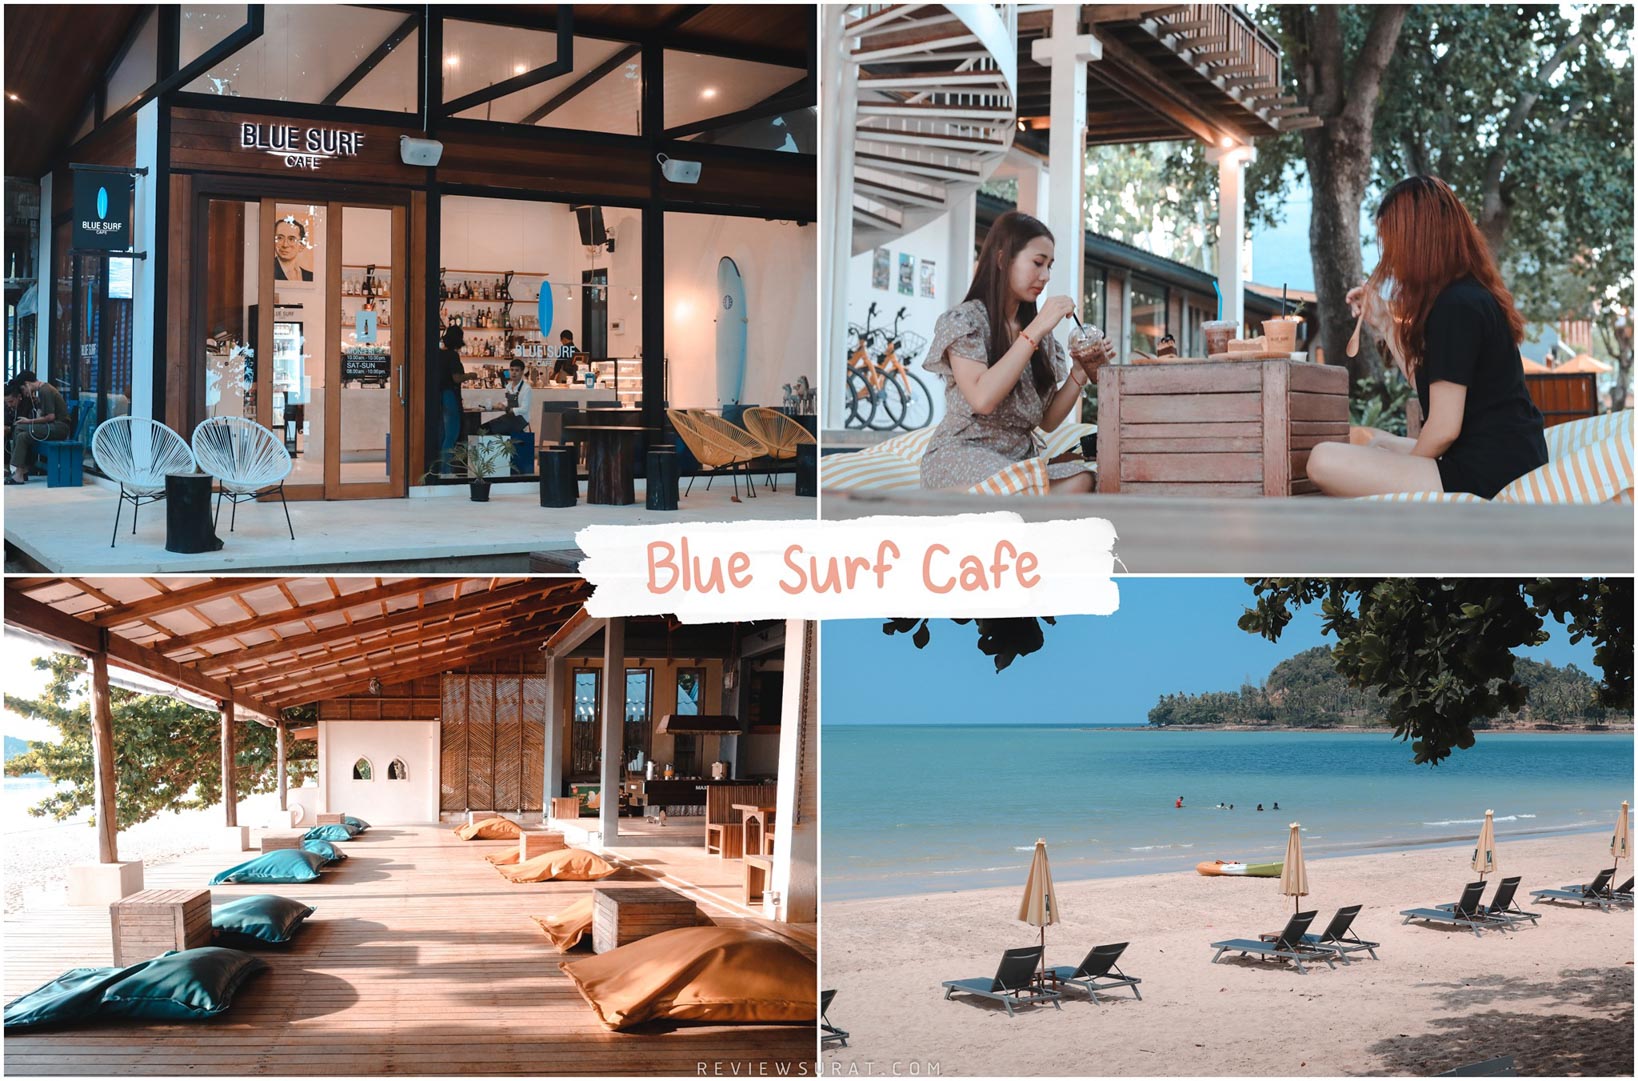 Blue-Surf-Cafe -คาเฟ่สุดชิคริมทะเลสวยๆ-บรรยากาศดีมวากกก-อร่อยด้วยน้าา-คาเฟ่เด็ดสุดฮิตสำหรับสายทะเลนั่งจิบกาแฟดูวิวปล่อยตัวปล่อยใจไปกับทะเล-ขอบอกก่อนเลยที่นี่สบายมากกก-มาชาร์จแบตพักกายพักใจได้-100--เลยยย-รีวิวกันเลยที่นี่ชื่อว่า--บลูเซิฟ-คาเฟ่--ตั้งอยู่ในโรงแรม-Sichon-Cabana-บรรยากาศเป็นวิวทะเลชายหาดสะอาดๆสวยๆ-เจ้าของดูแลดีอย่างมากกก-มีเรือให้พายเล่น-มี-Surf-ให้เล่น-และคนที่สนใจจะหัดเล่นจริงจังสามารถสมัครเรียนกับเจ้าของร้านได้ด้วย-คือดีย์ไปอีกกก-ครบไปเลยในเรื่องทะเล-ขาดแค่ดำน้ำแล้ว--หรือว่ามีด้วยก็ไม่รู้-555--รีวิวกันเลยในส่วนของเครื่องดื่มเบเกอรี่-แอดมินลองแล้วชาเขียวมัจฉะชอกโกแลตอร่อยยยย-เค้กอร่อยมวากครับขอบอกก-สวยจริงๆเด้อต้องมาเช็คอินกันซักครั้งจุดถ่ายรูปเยอะมากกก คาเฟ่,นครศรีธรรมราช,2021,จุดกิน,ของกิน,วิวหลักล้าน,ร้านกาแฟ